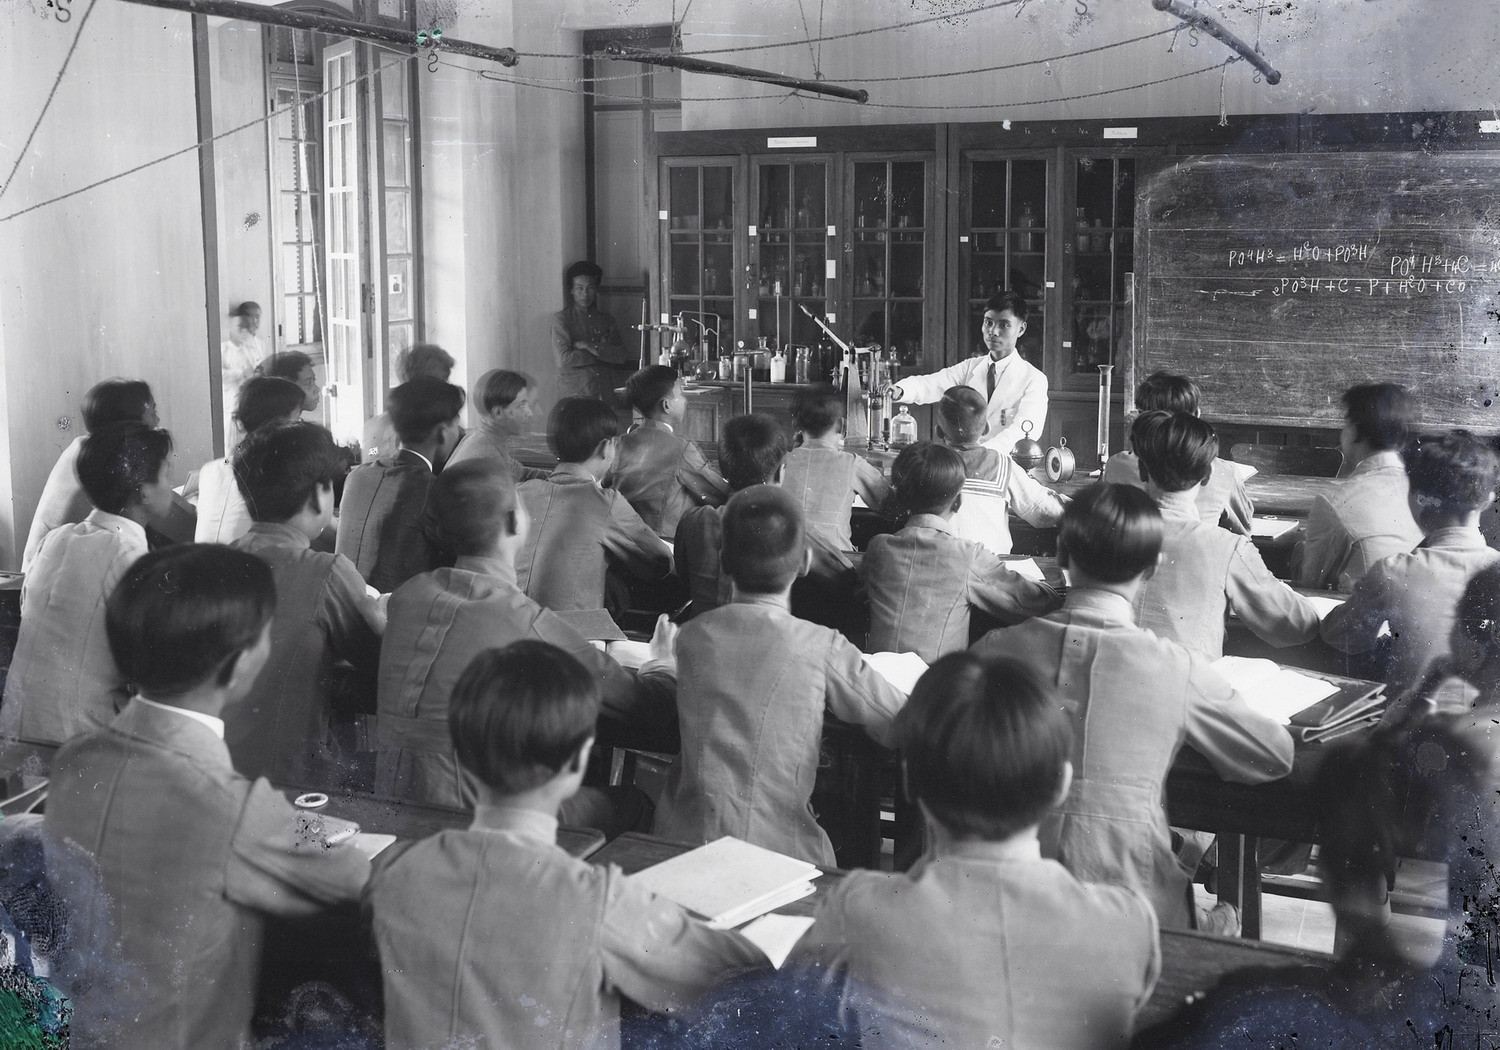 Nội cảnh ở Trường Trung học Albert Sarraut ở Hà Nội đầu thế kỷ 20